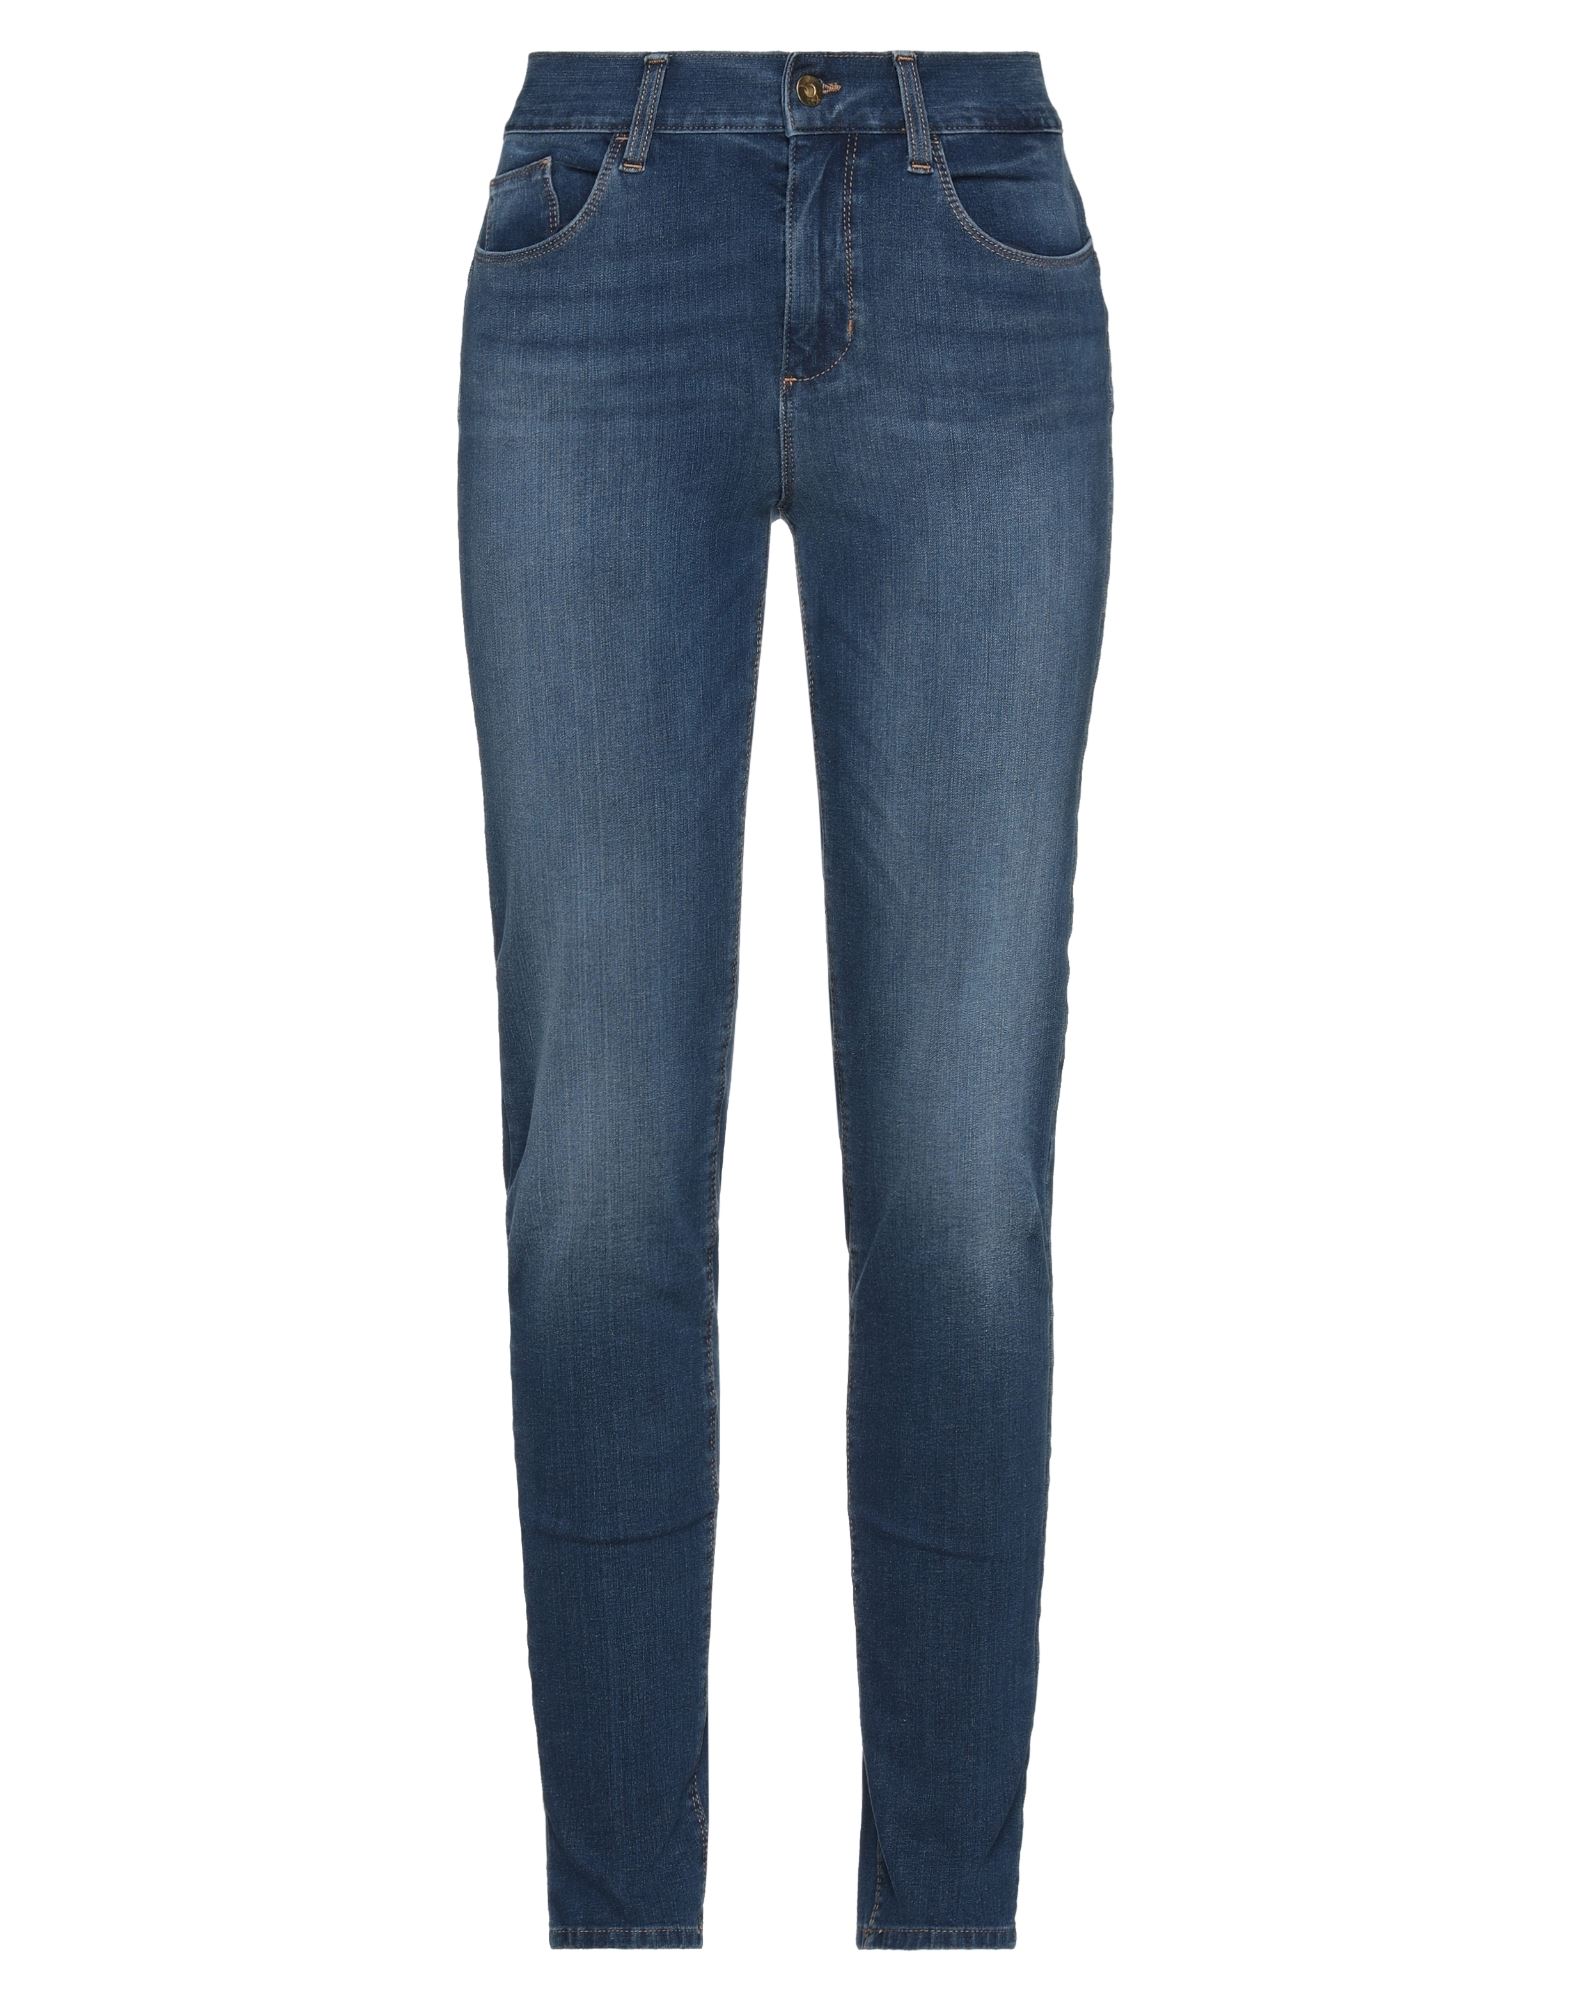 Liu •jo Woman Jeans Blue Size 28w-30l Cotton, Polyester, Elastane